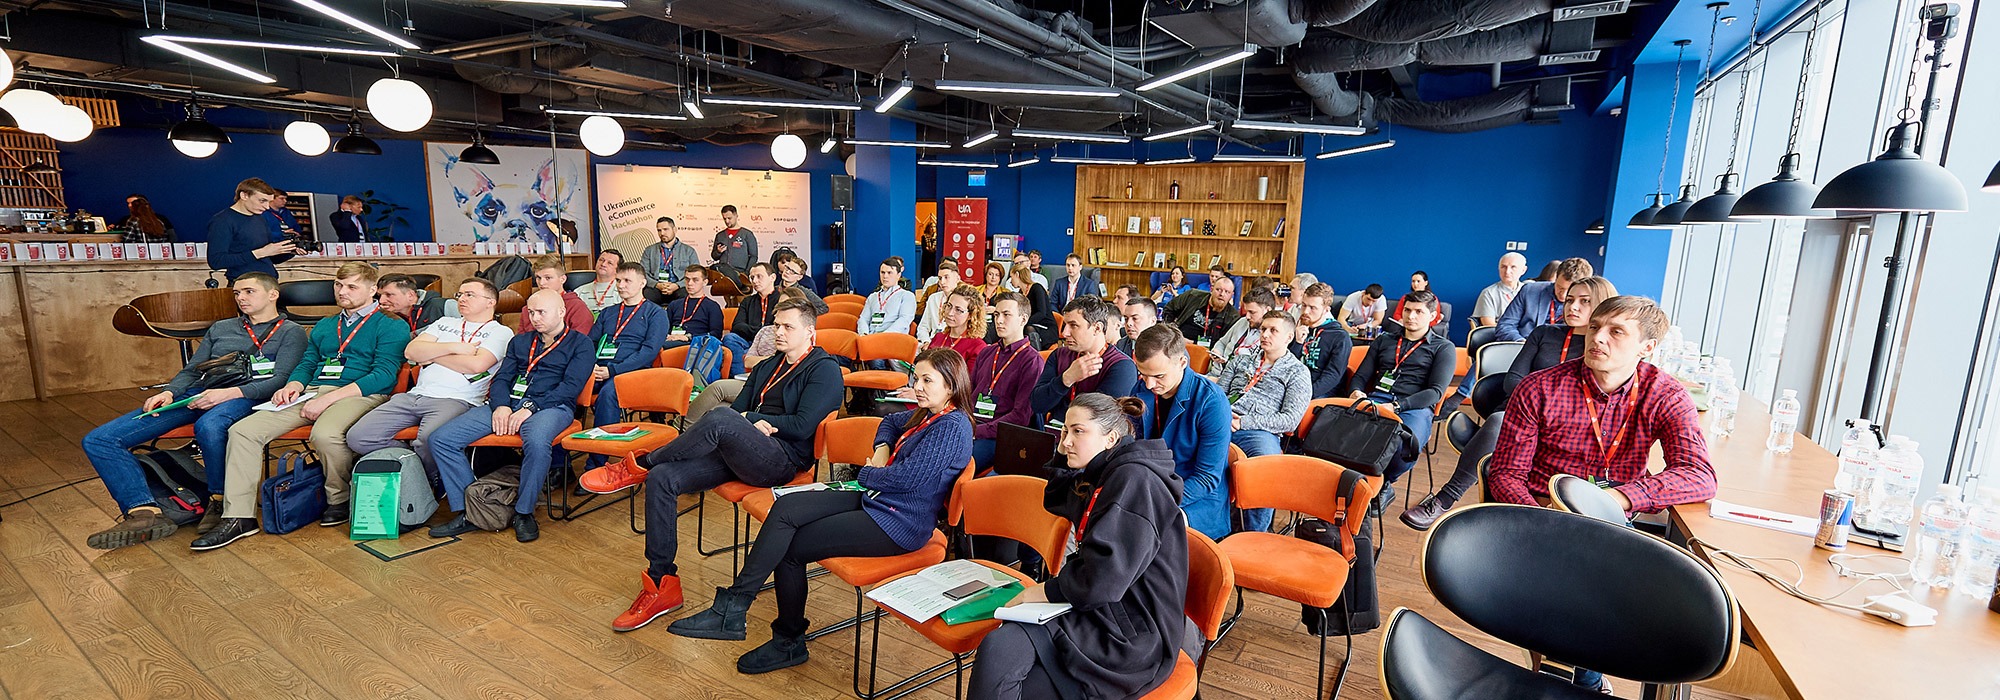 Ecommerce Hackathon по-украински: как это было